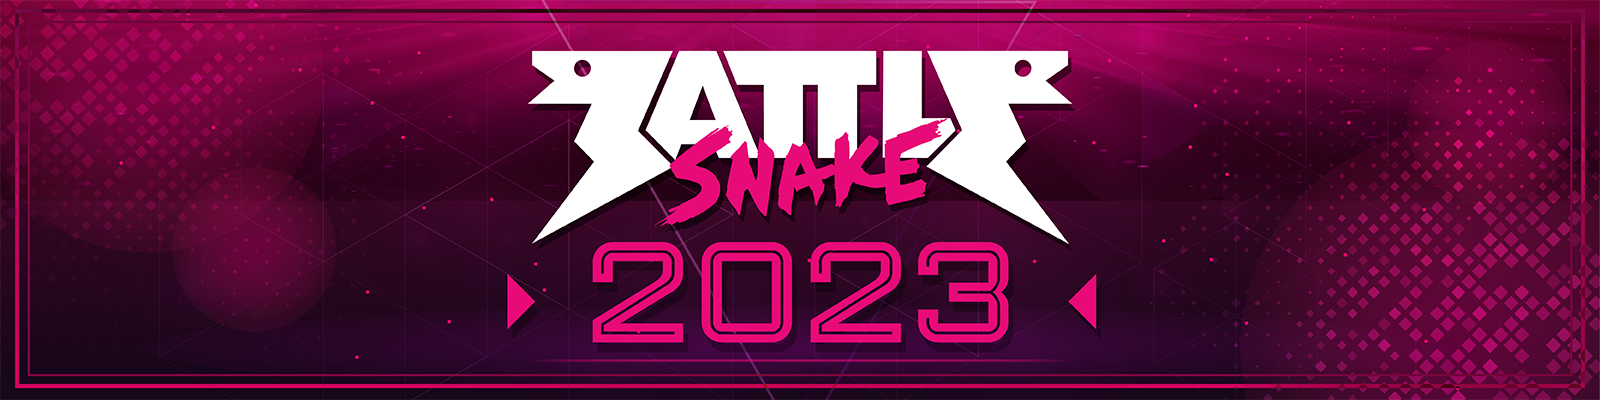 Battlesnake 2023